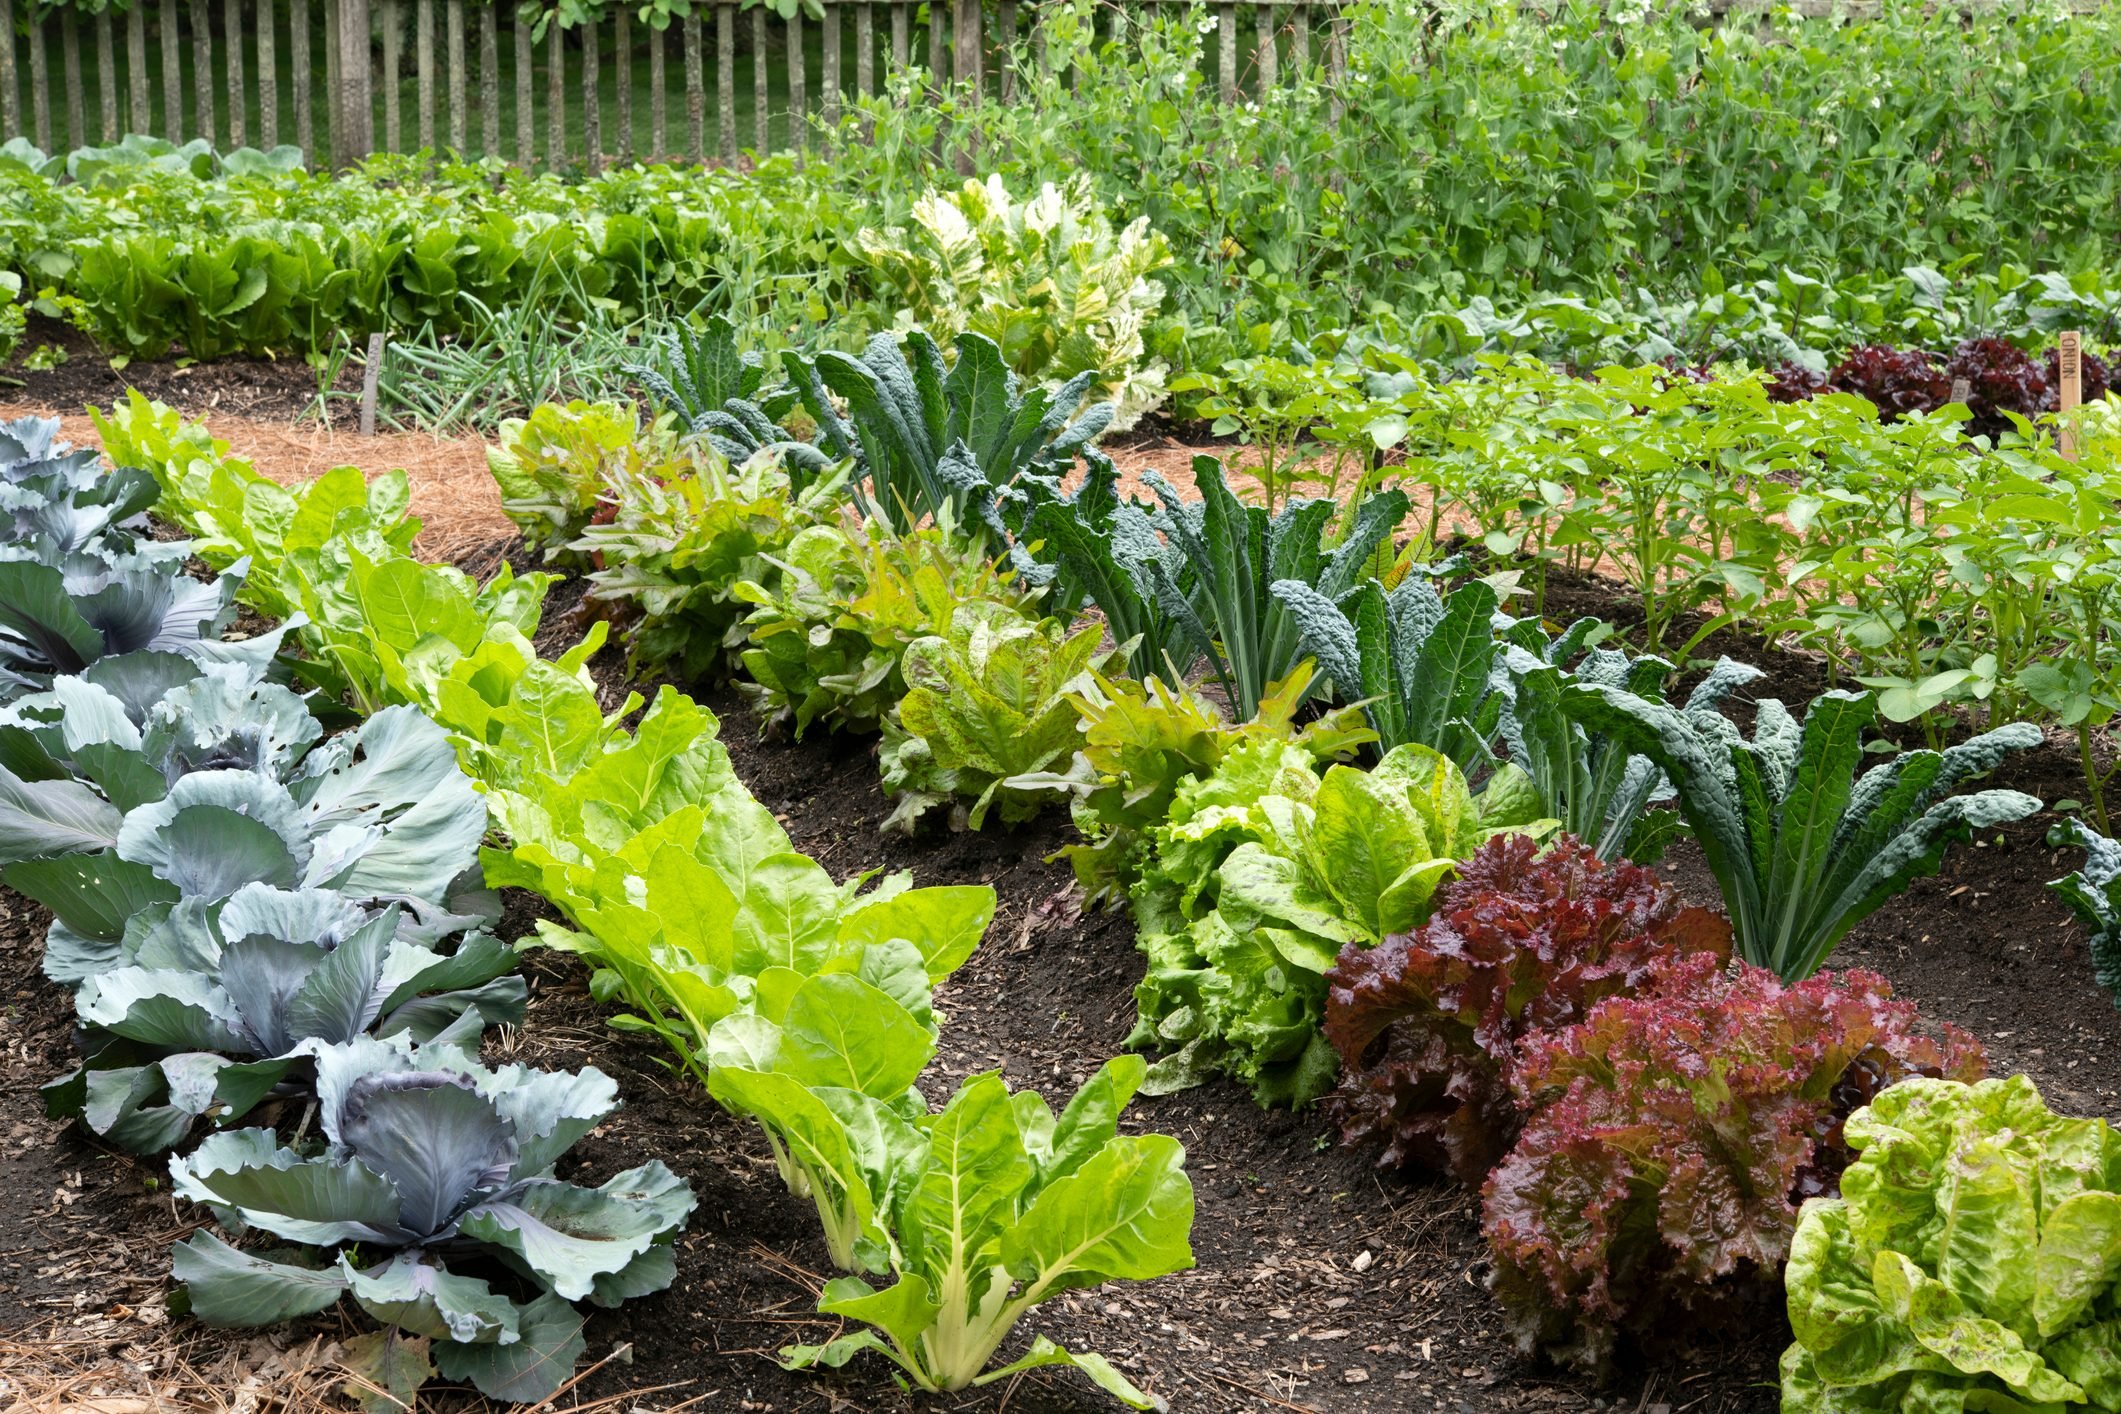 10 Tips for Starting a Vegetable Garden